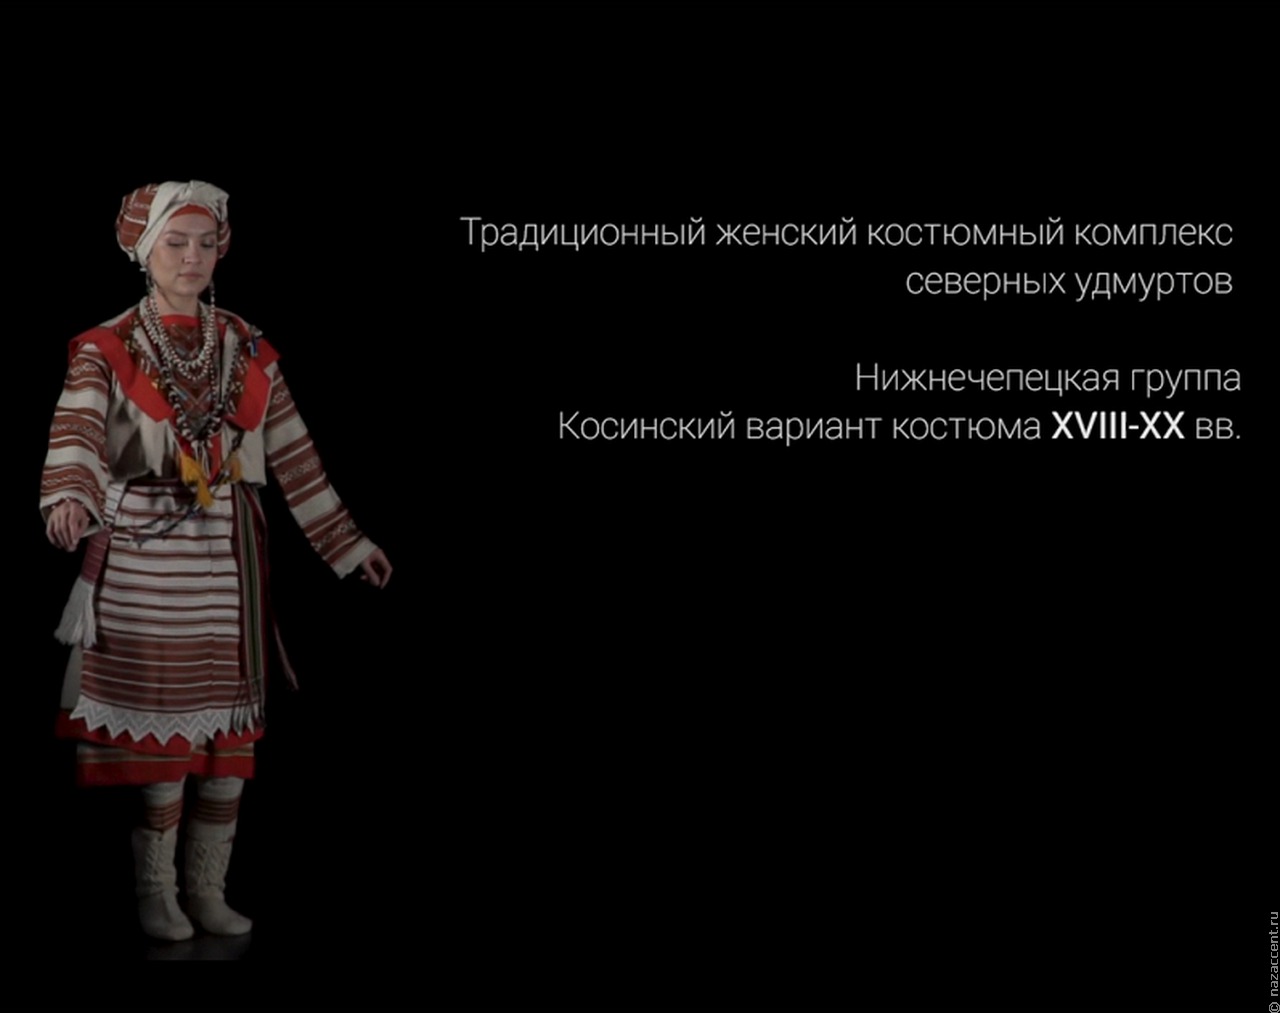 В Удмуртии запустили проект об удмуртском национальном костюме